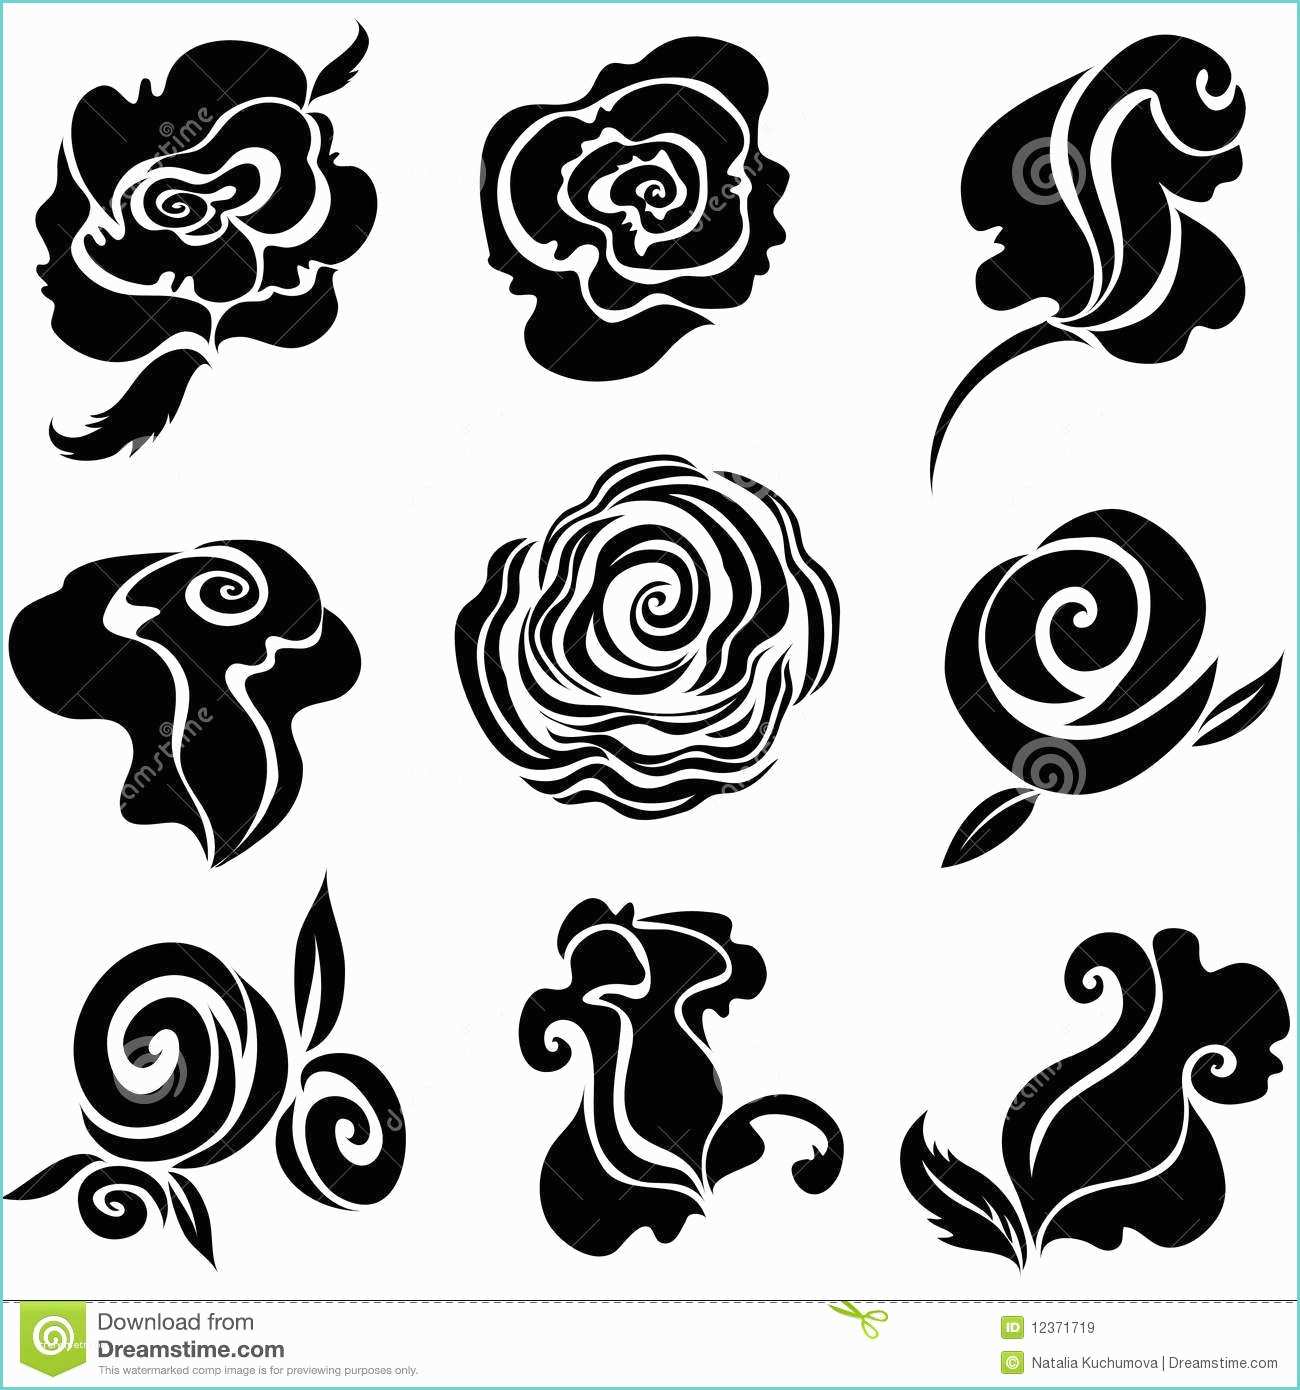 Immagini Di Rose Da Disegnare Insieme Degli Elementi Di Rosa Di Disegno Del Fiore Del